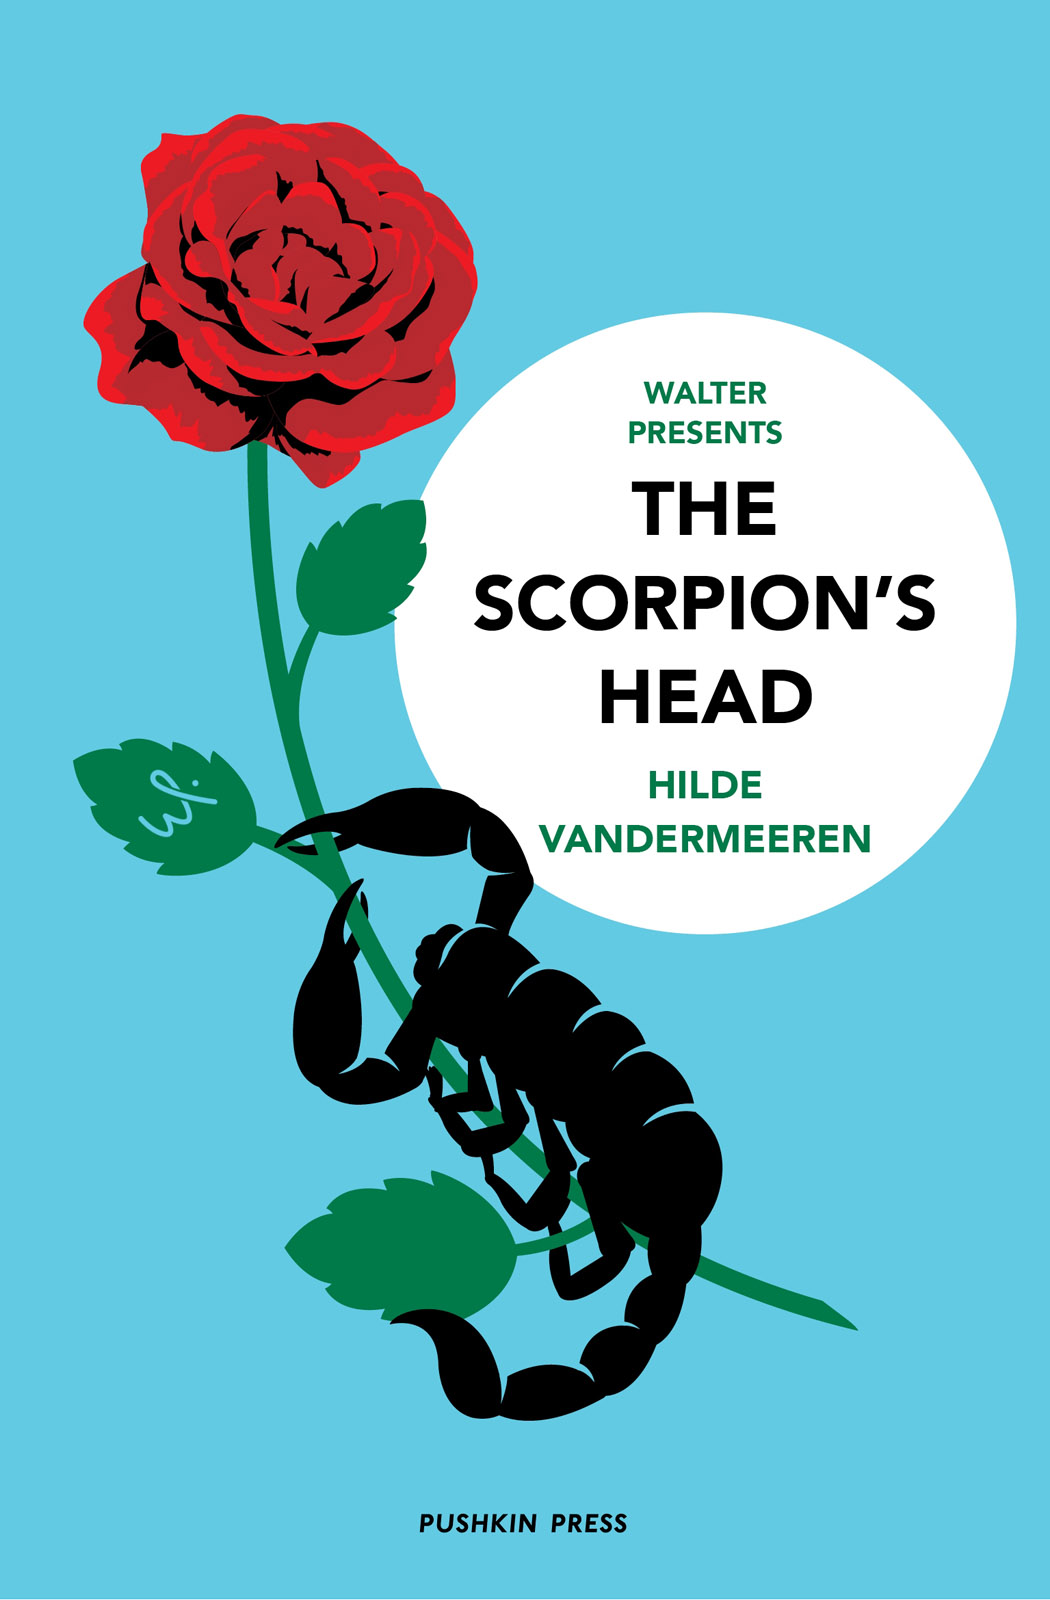 The Scorpion's Head – Hilde Vandermeeren